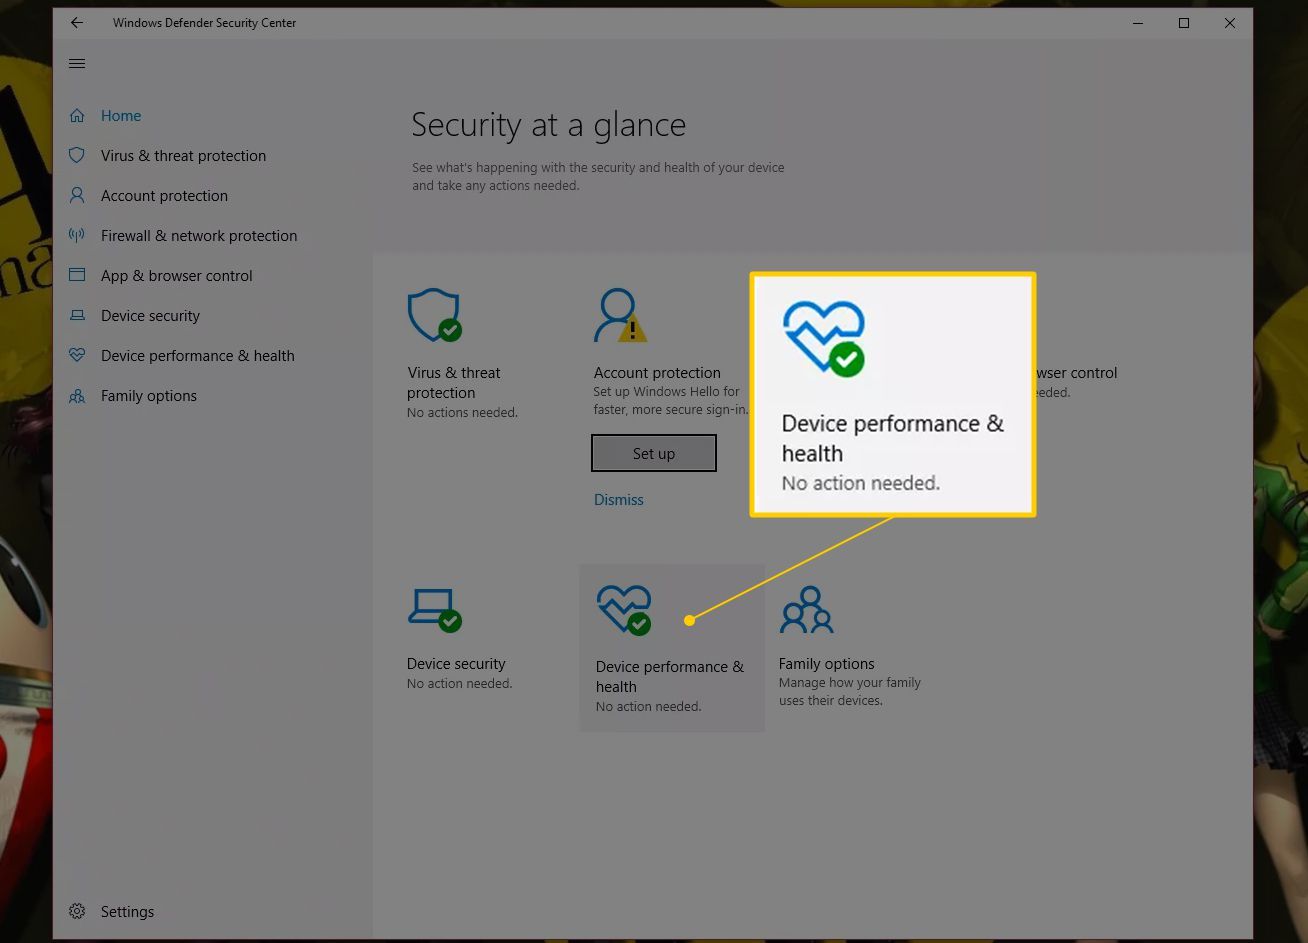 Кнопка производительности и работоспособности устройства в Security Center для Windows 10